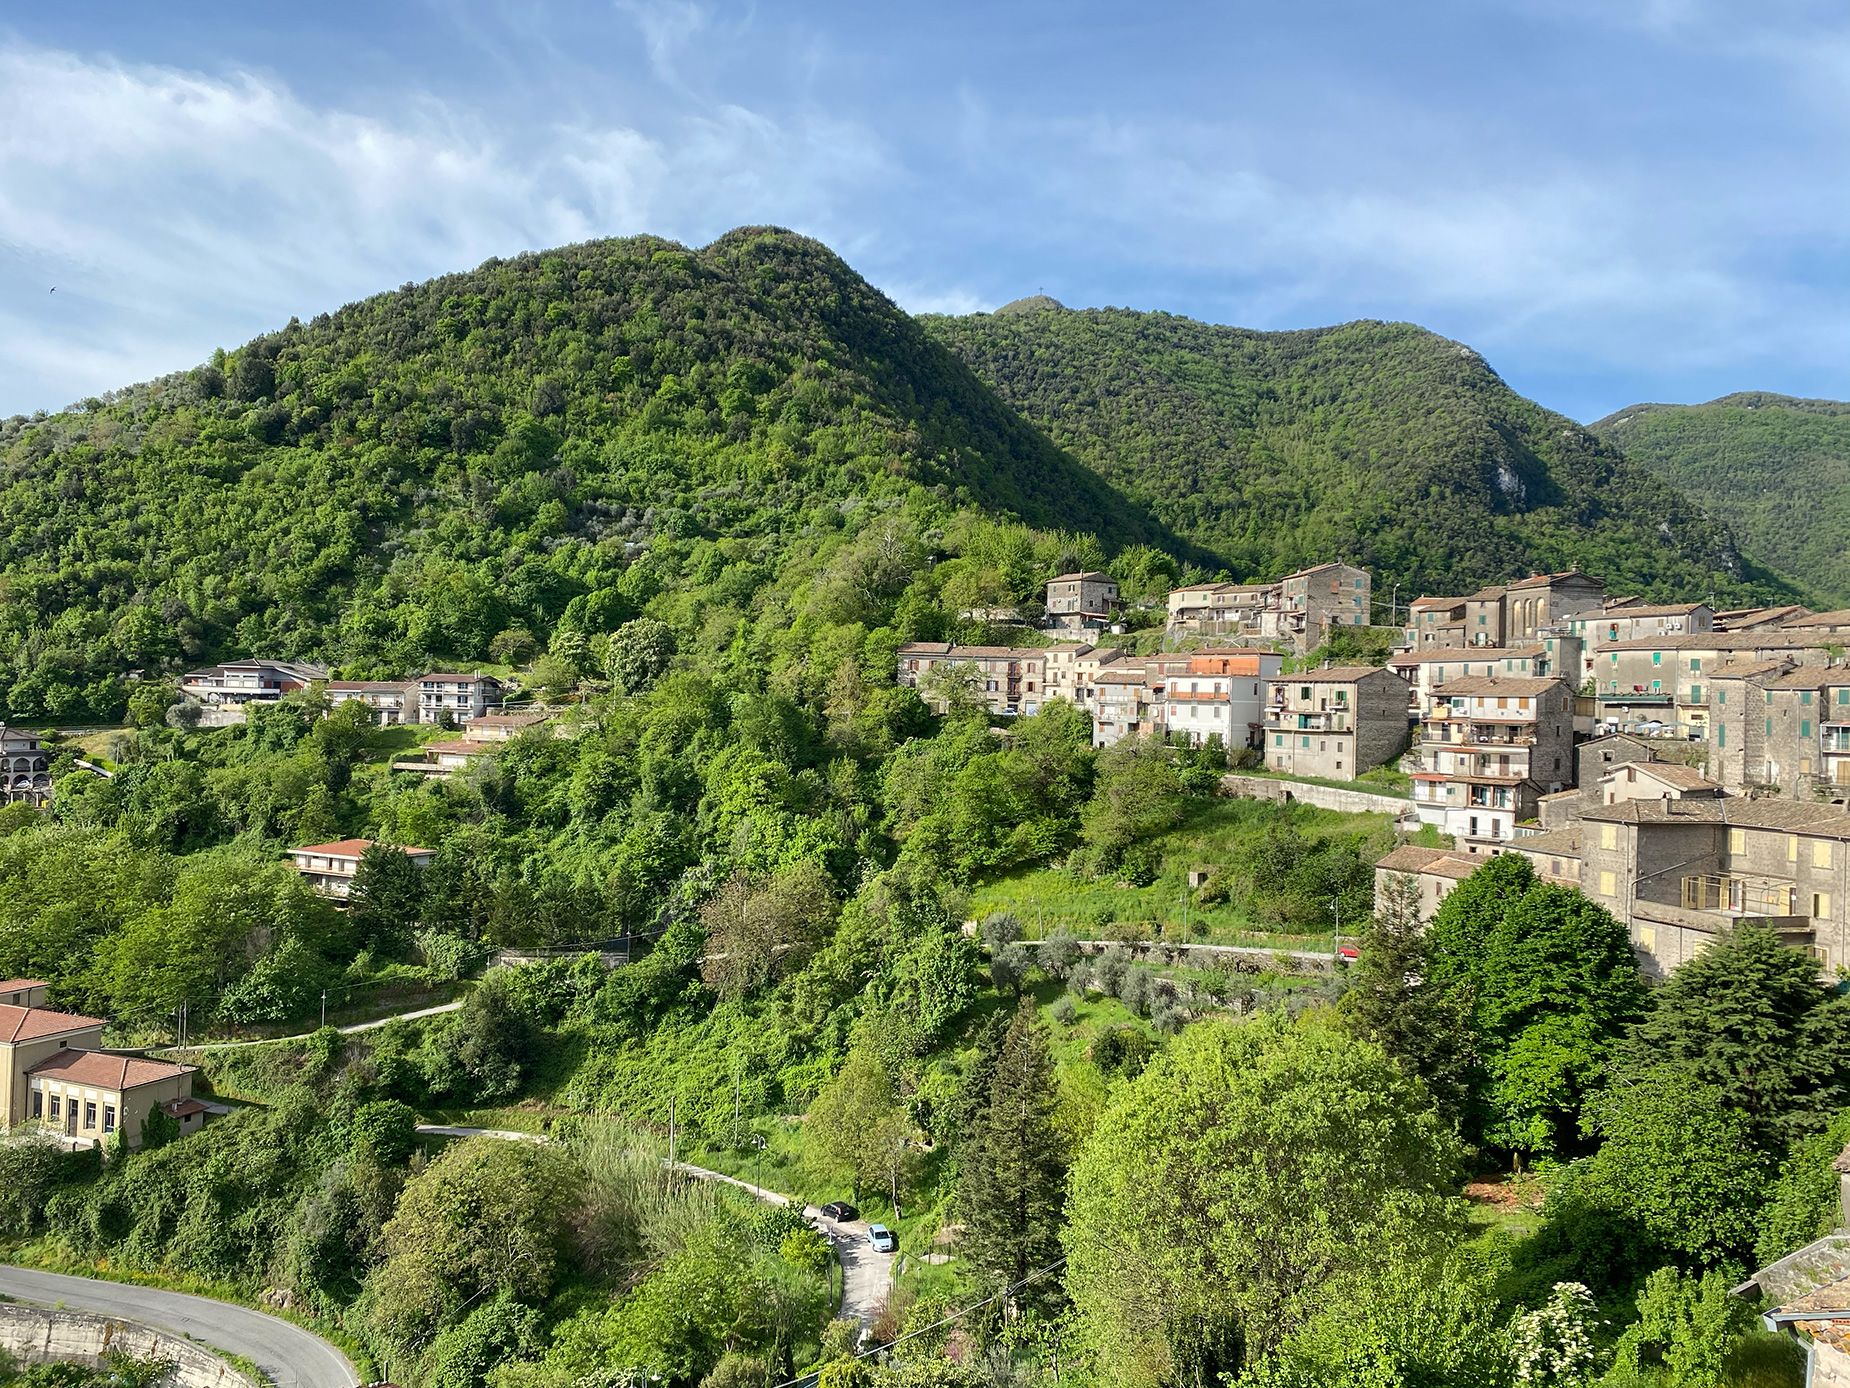 قرية باترشا الإيطالية تعرض منازلها للبيع مقابل 1 يورو.. لا أحد يشتريها